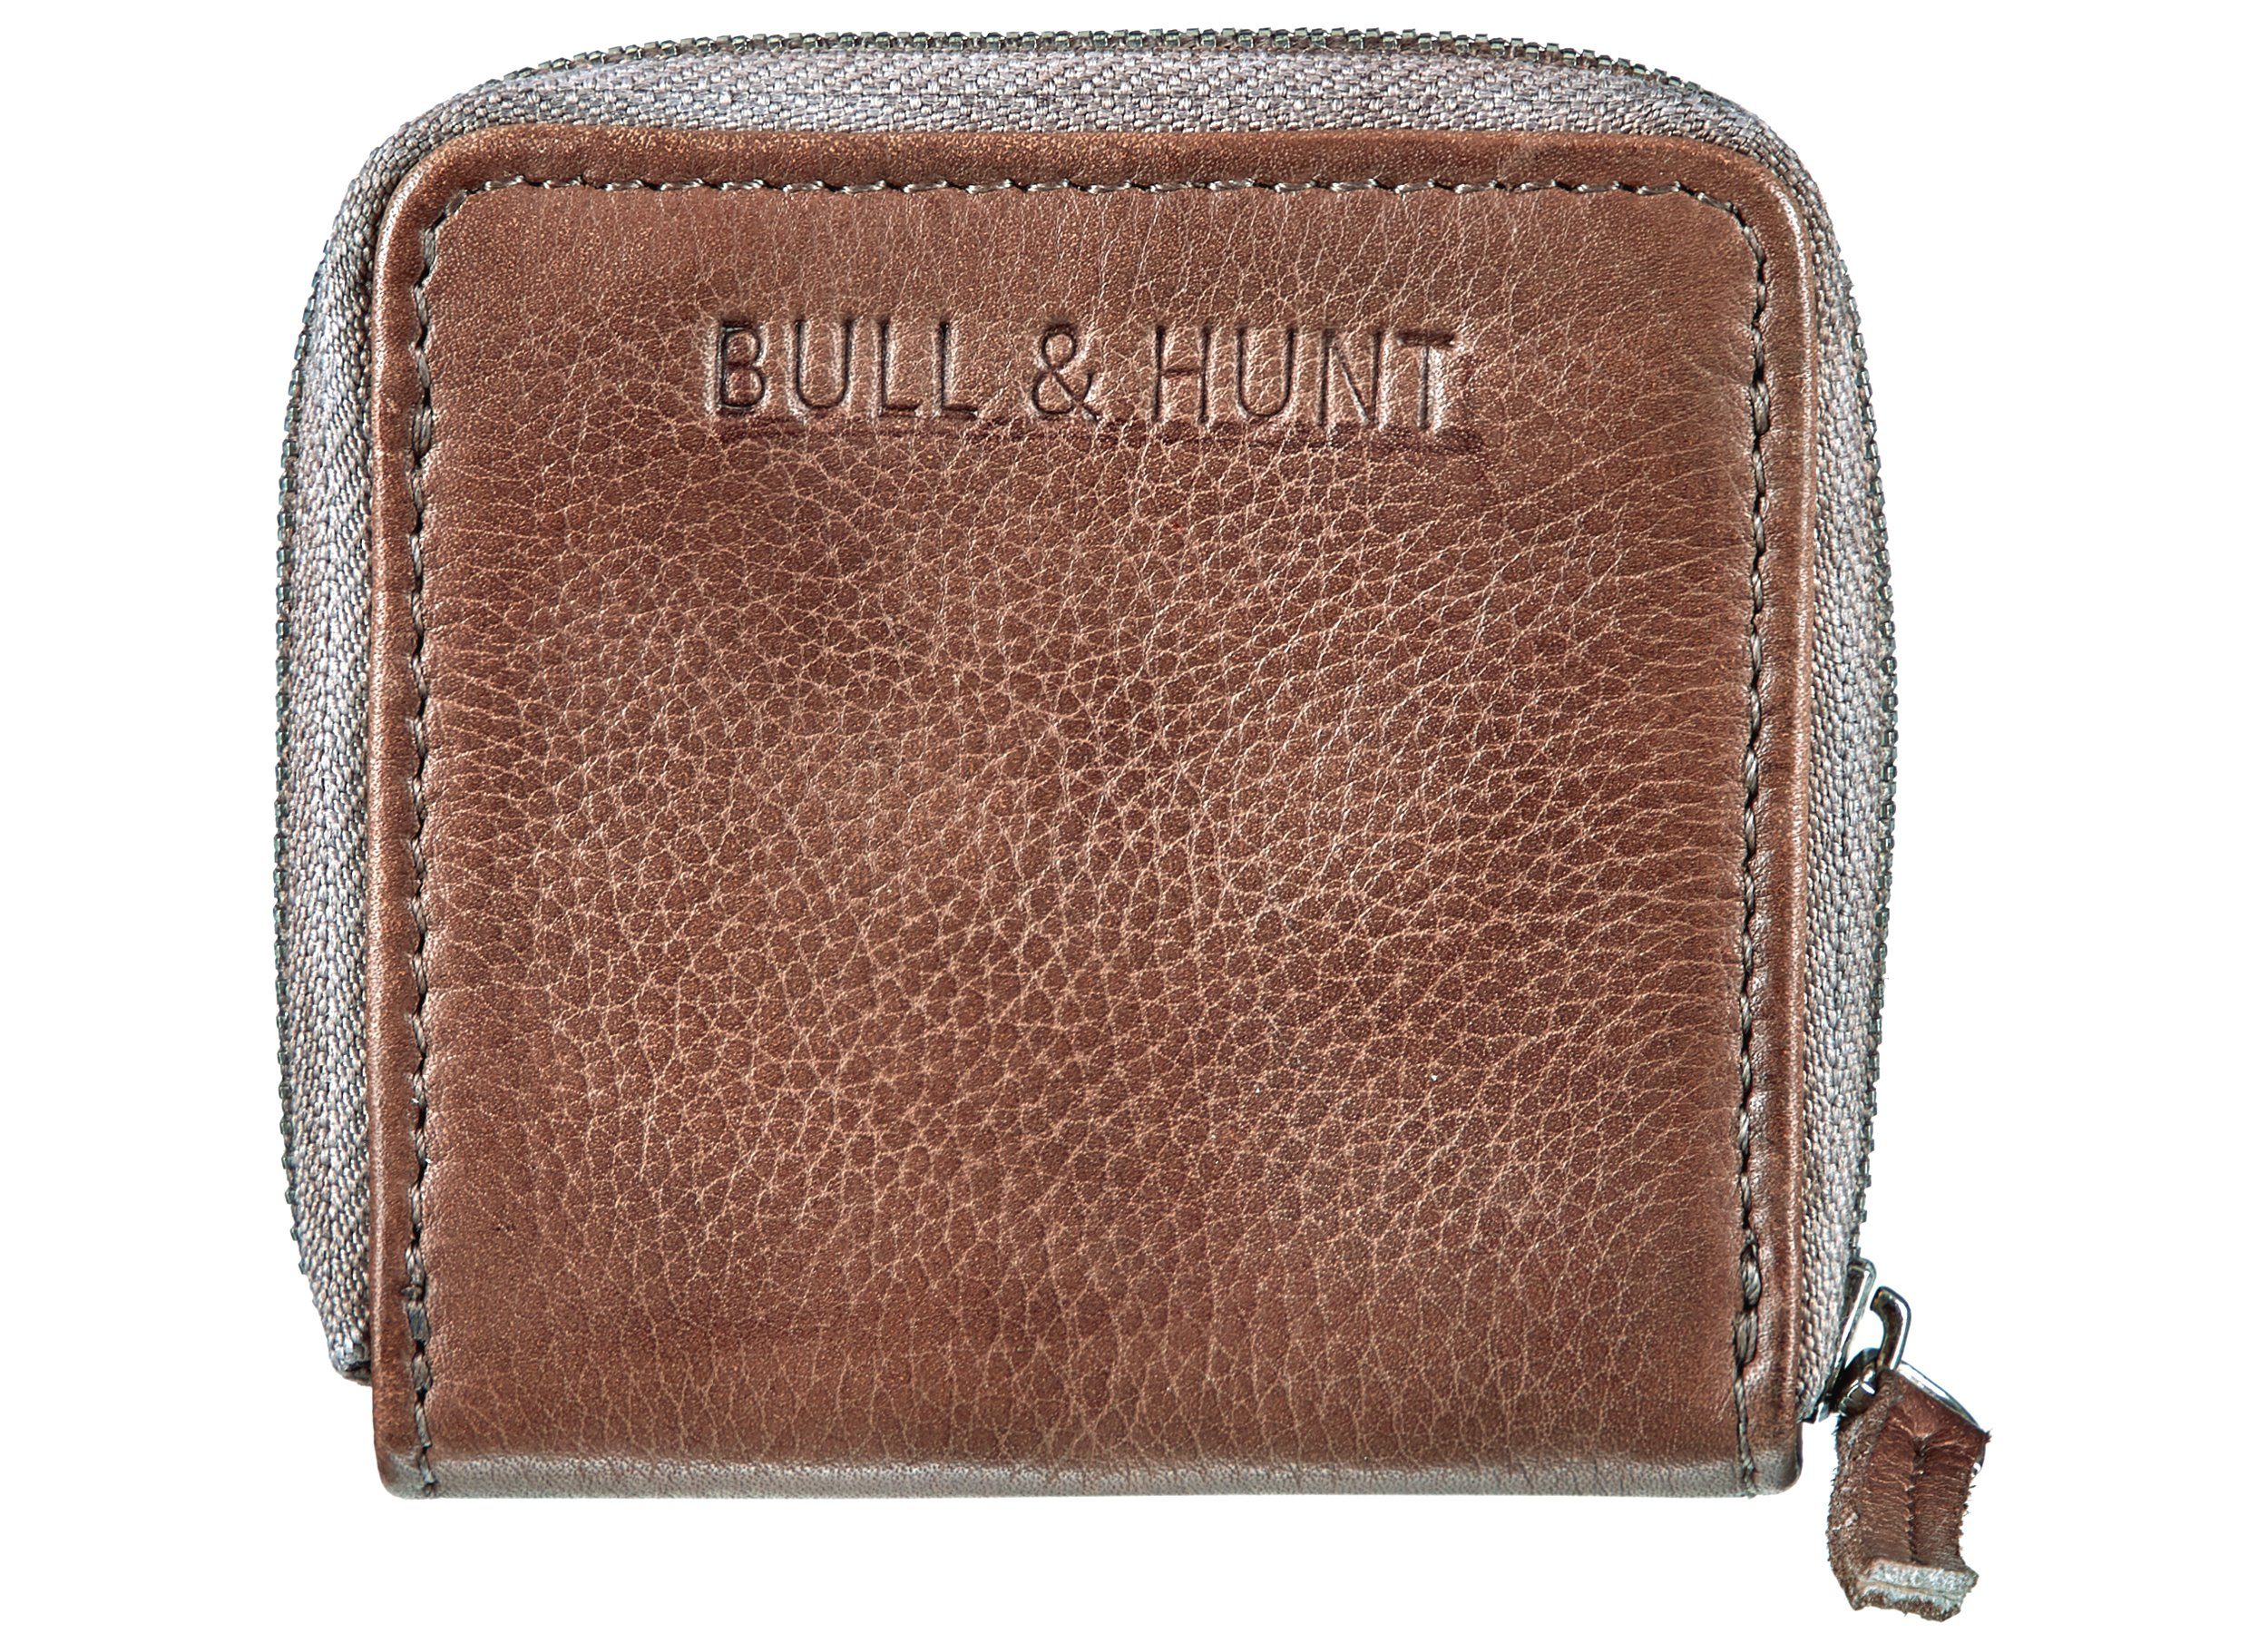 Bull & Hunt Mini Geldbörse mini zip wallet taupe